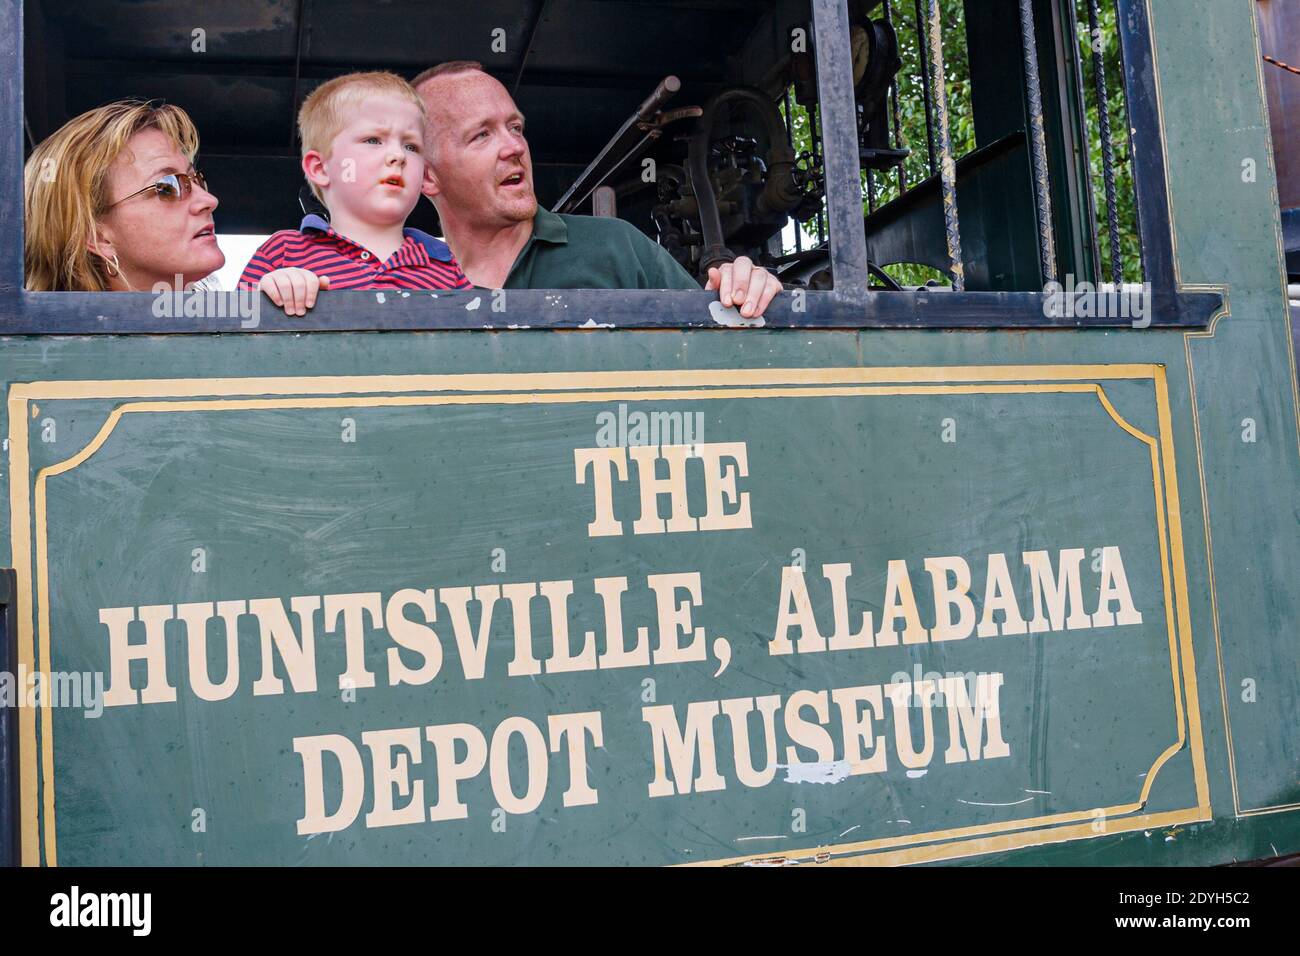 Huntsville Alabama, Depot Museum construit 1860 gare, mère père fils famille rendant visite aux visiteurs, Banque D'Images